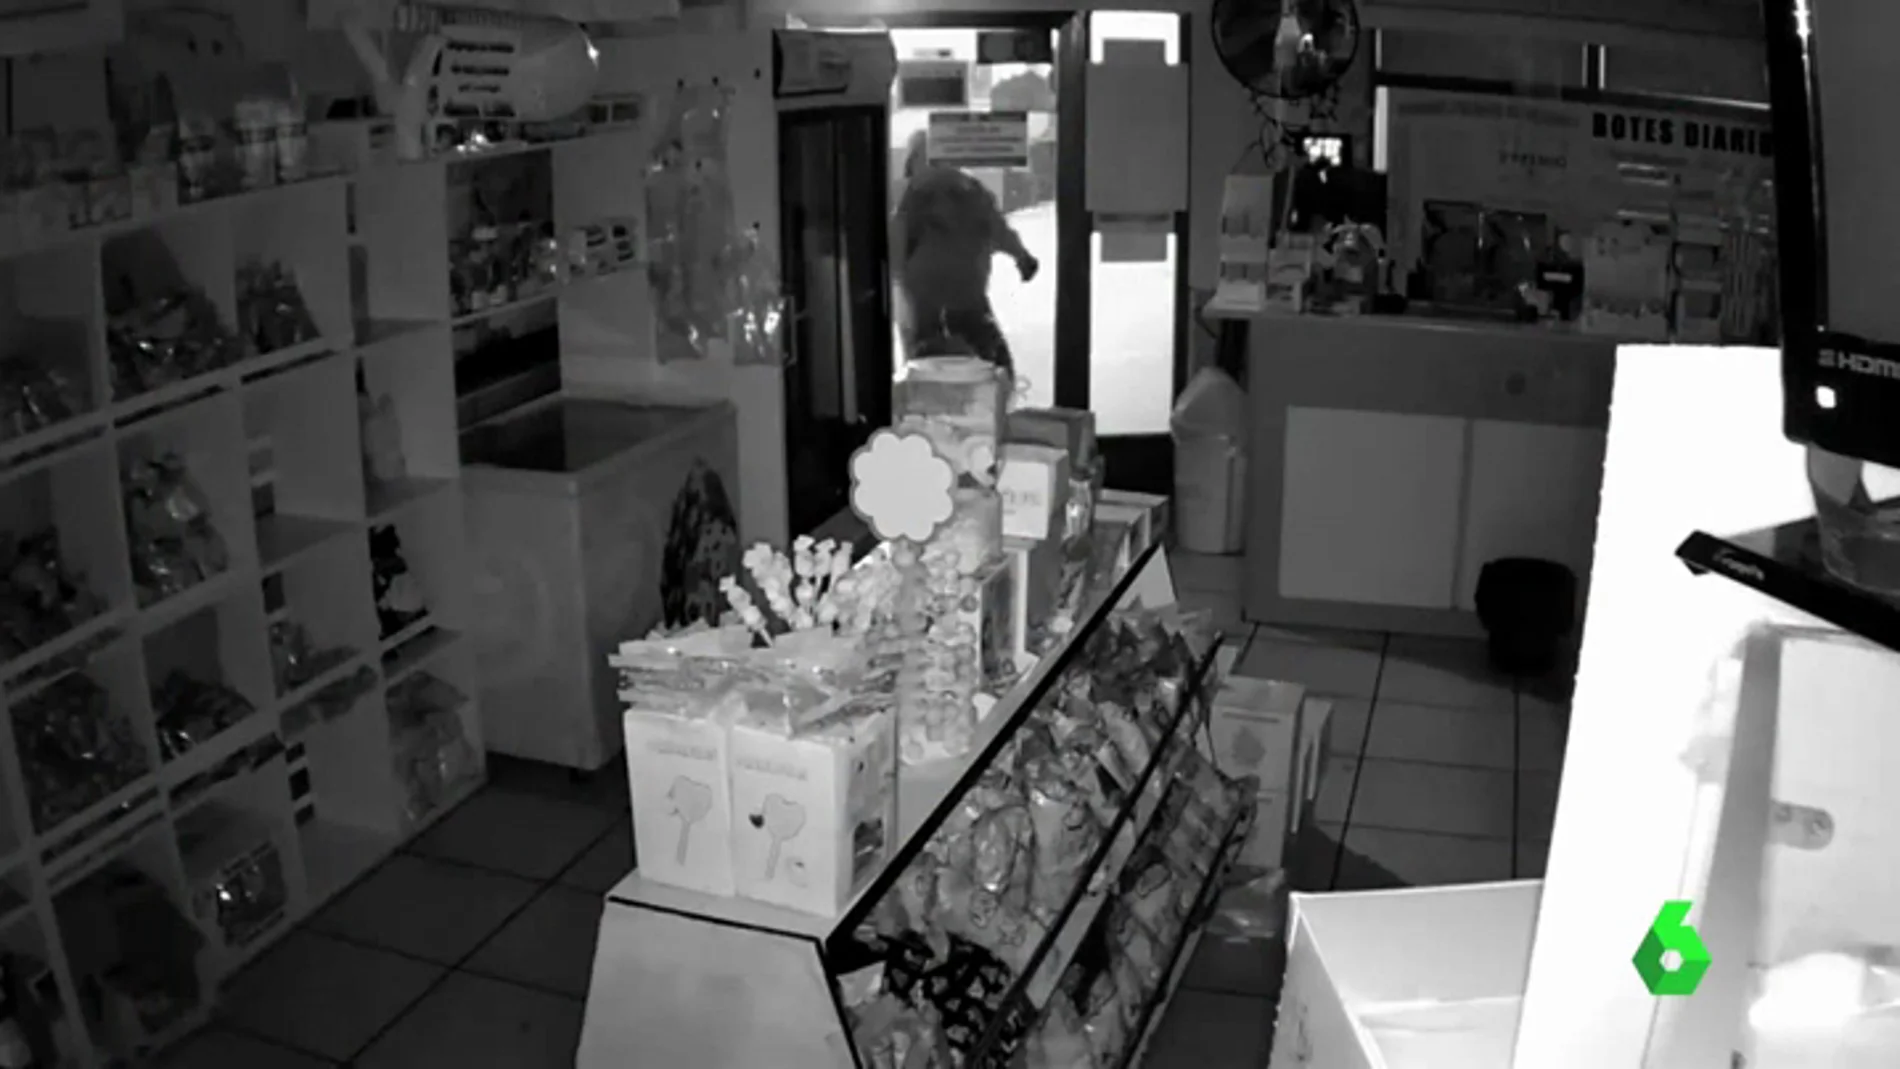 Jóvenes entran en una tienda a robar